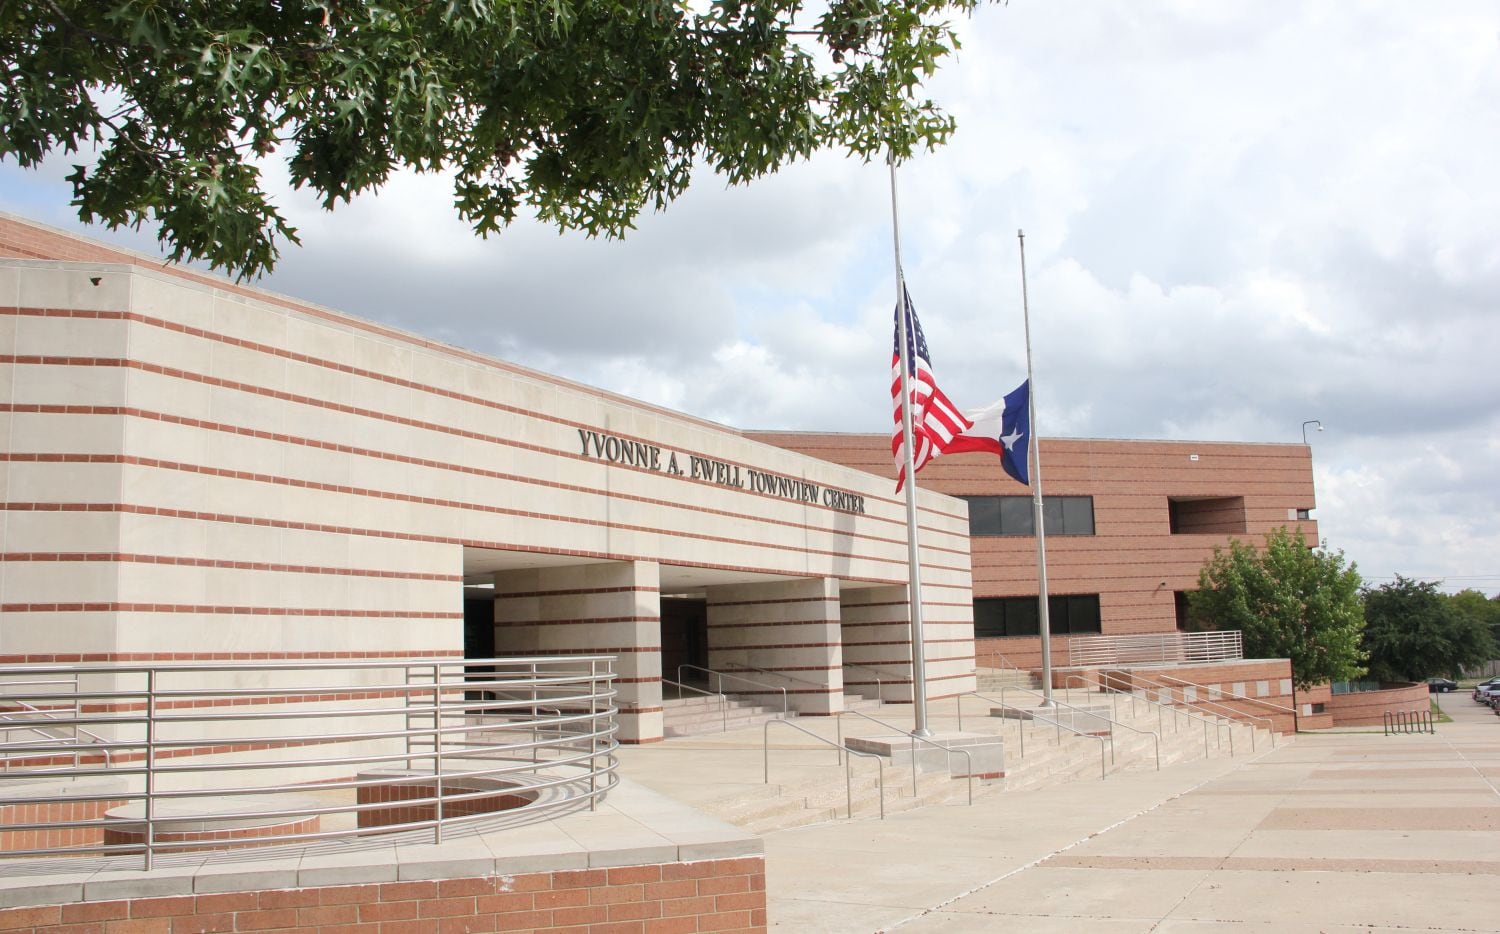 The School for the Talented and Gifted es considerada la mejor secundaria de Texas.